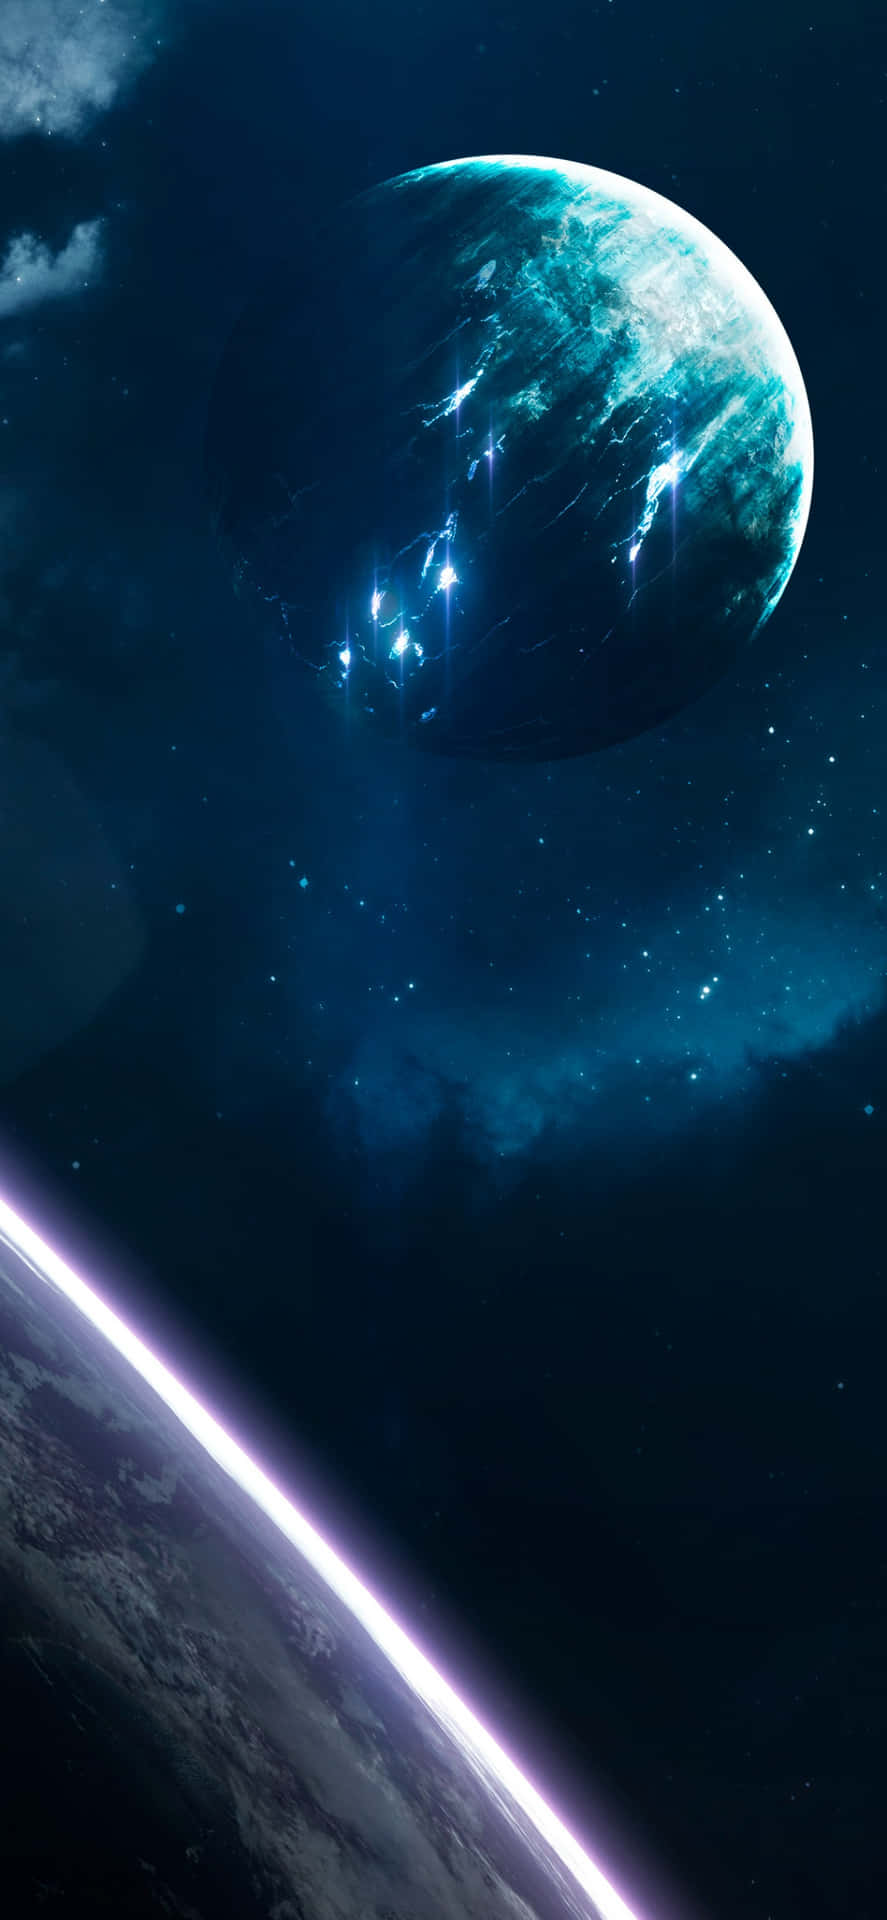 Wallpaperupplev Galaxen Med Blue Galaxy Iphone-bakgrunden. Wallpaper